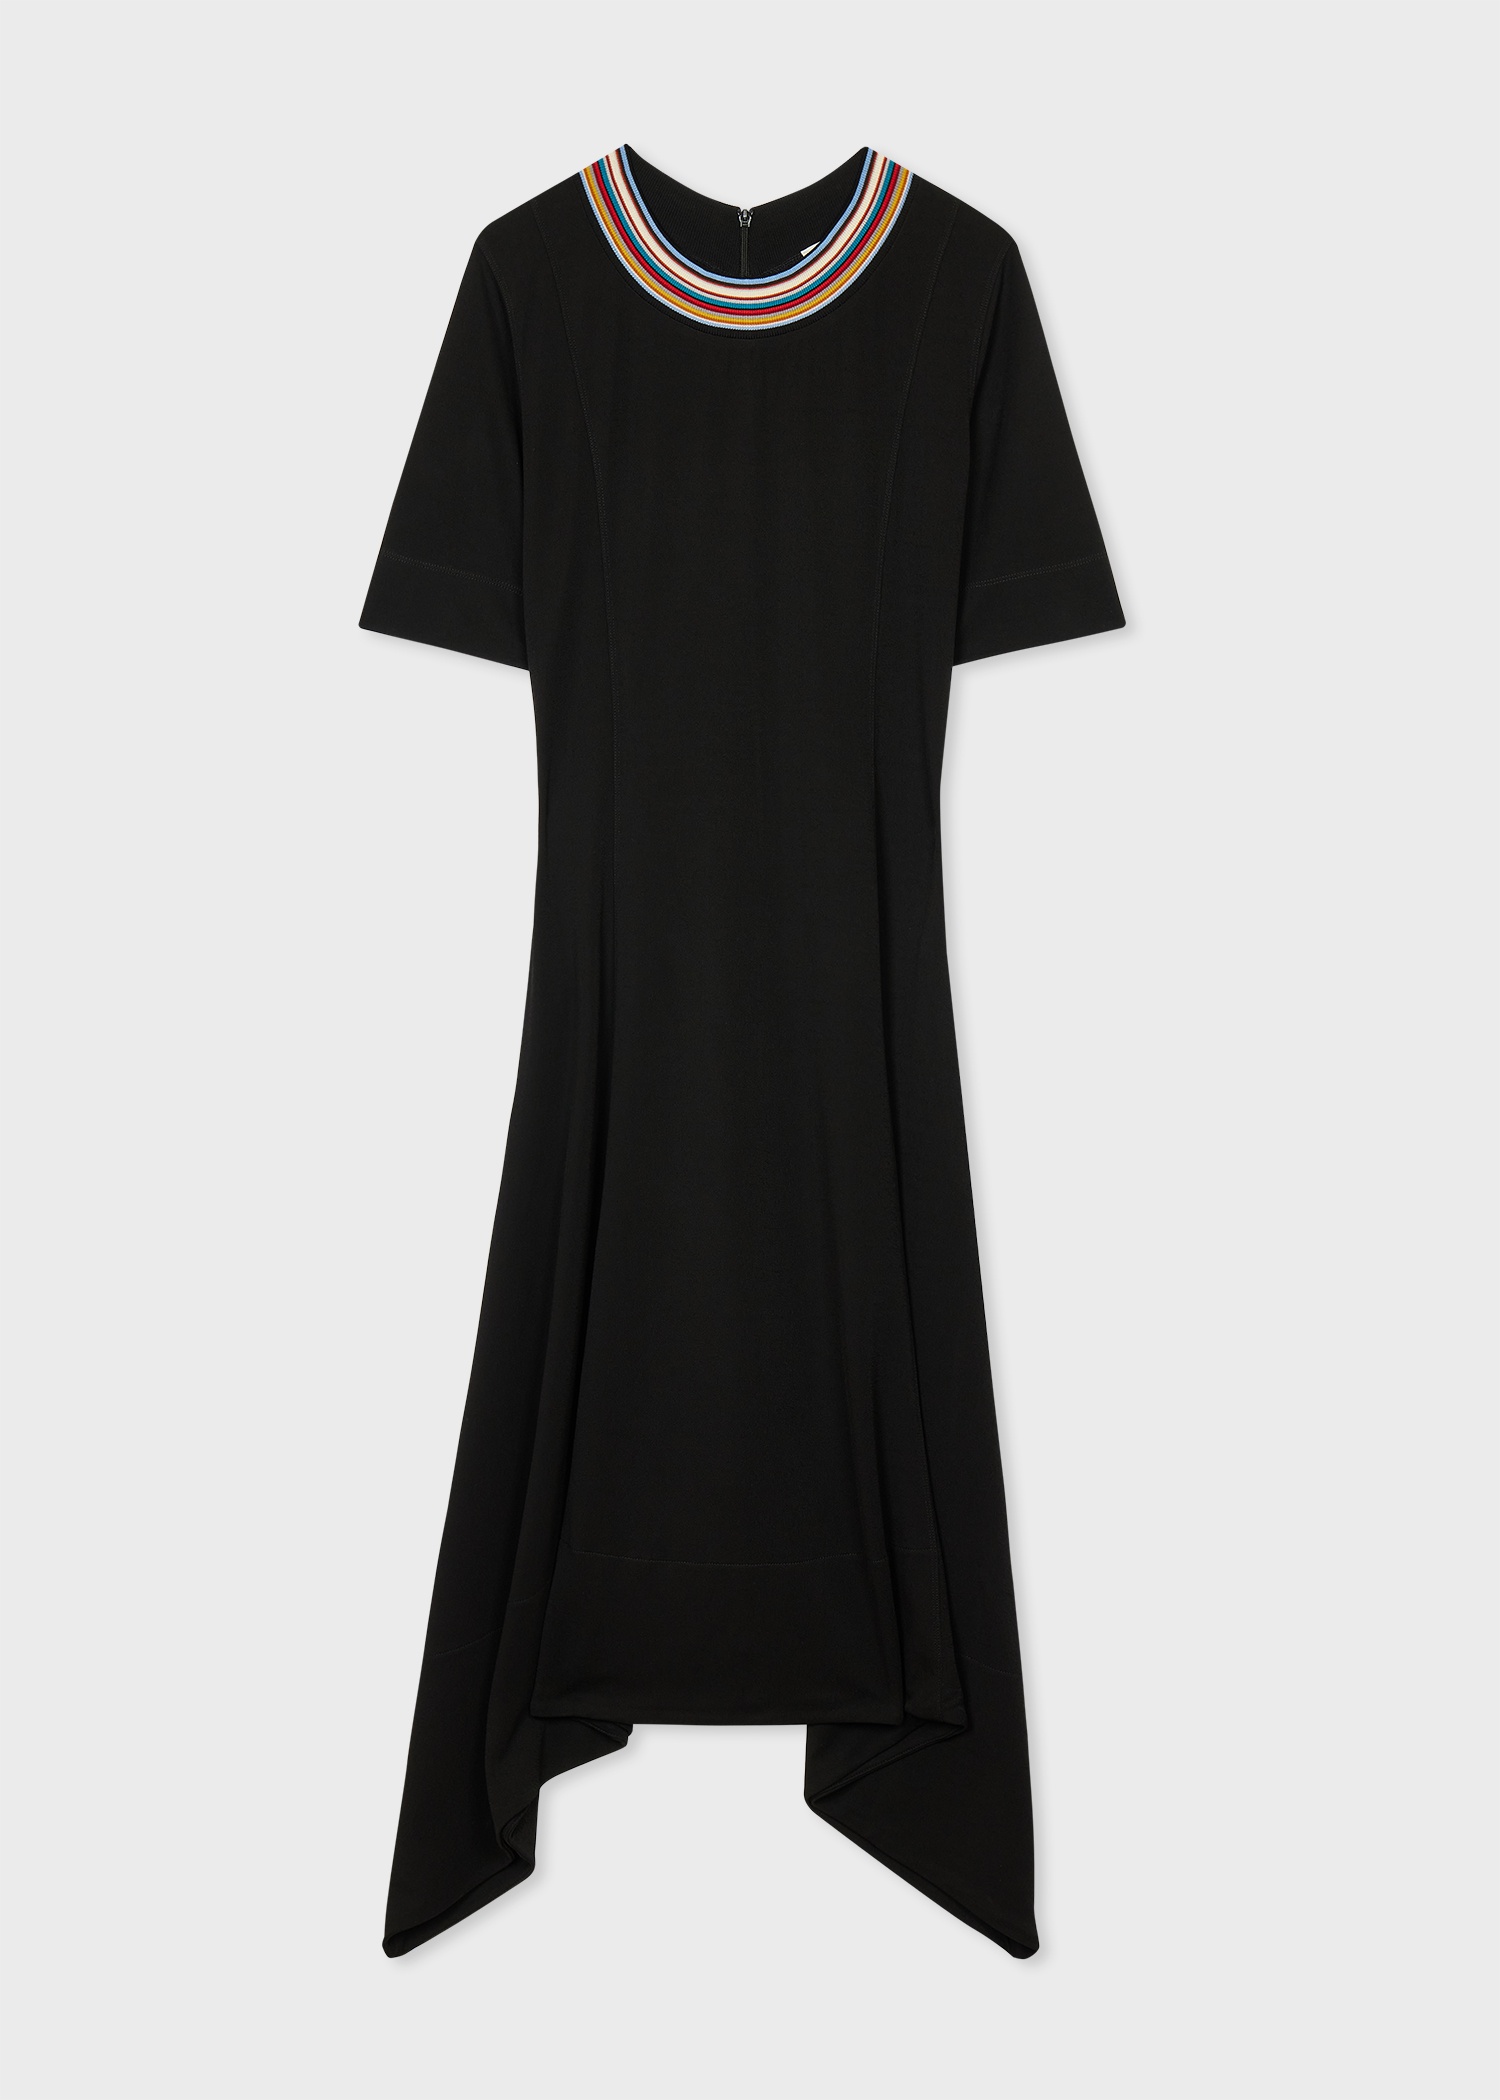 Women's Black Jersey Hanky Hem Dress - 1